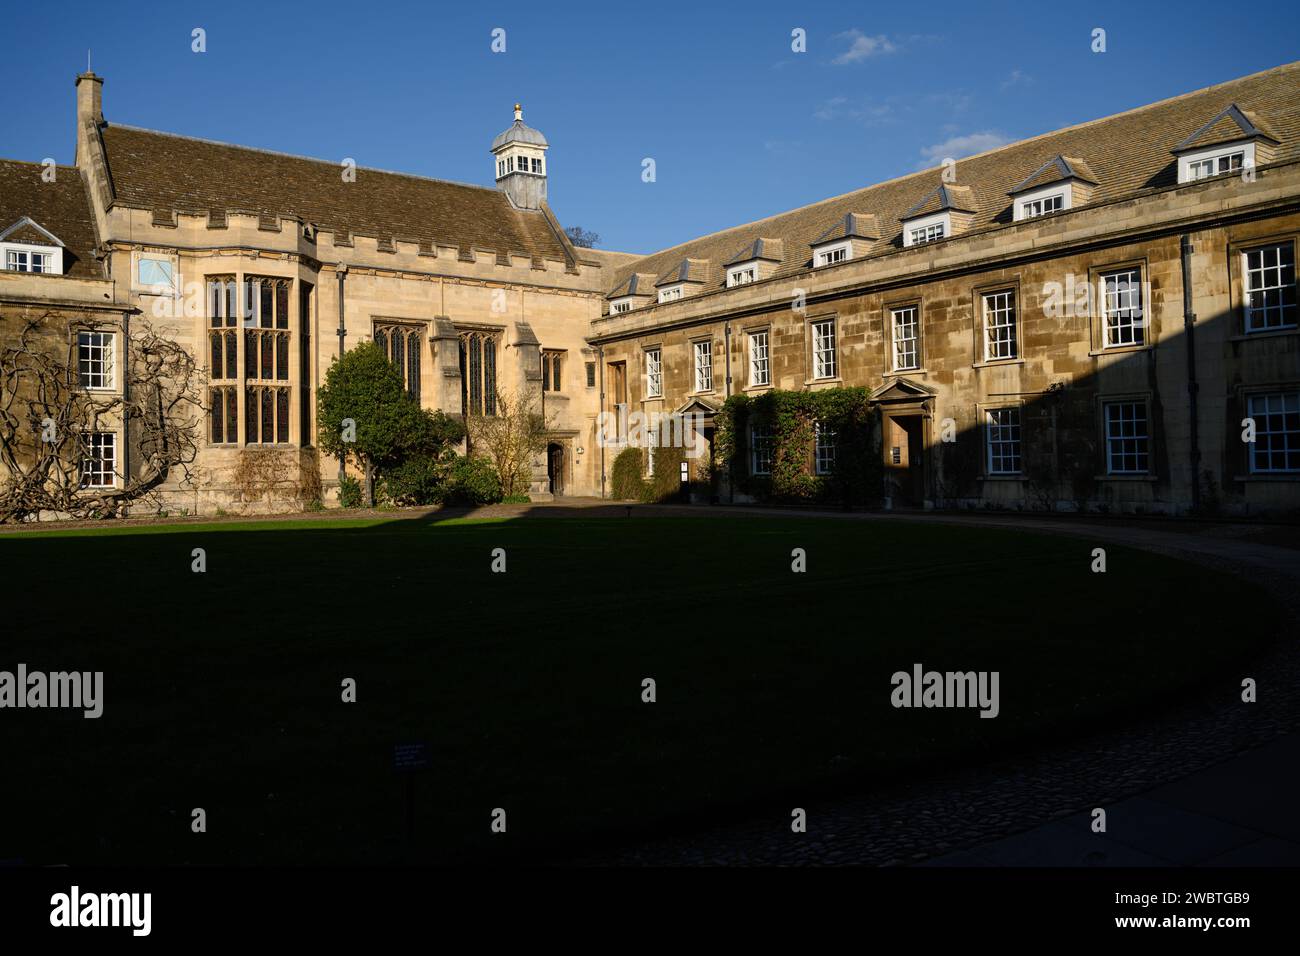 Bien que connue pour sa prestigieuse université, Cambridge est également l'une des villes les plus inégales du Royaume-Uni. Il y a une disparité alarmante entre la ville et la robe en termes de richesse. Le quadrant du Collège du Christ dans la lumière de fin d'après-midi. Banque D'Images